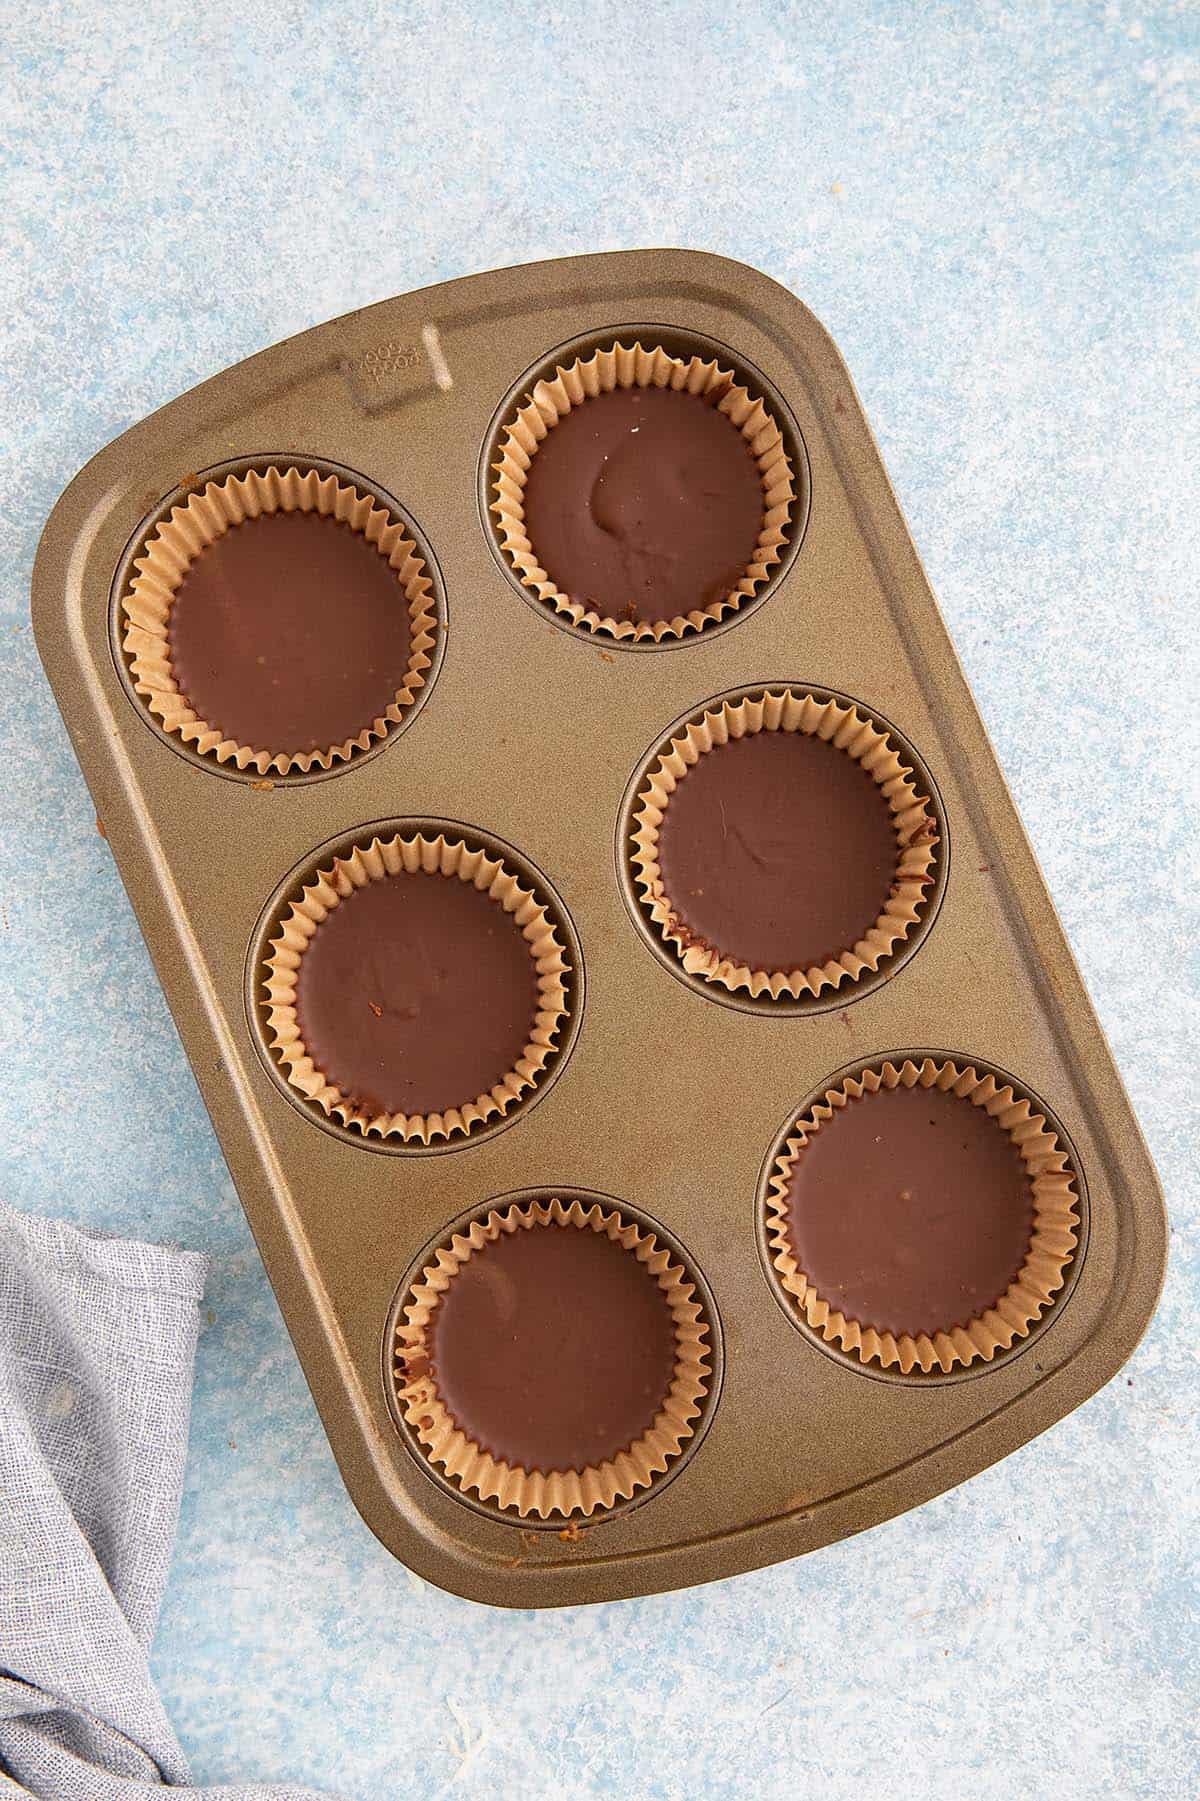 chocolate sunbutter cups in a muffin pan.